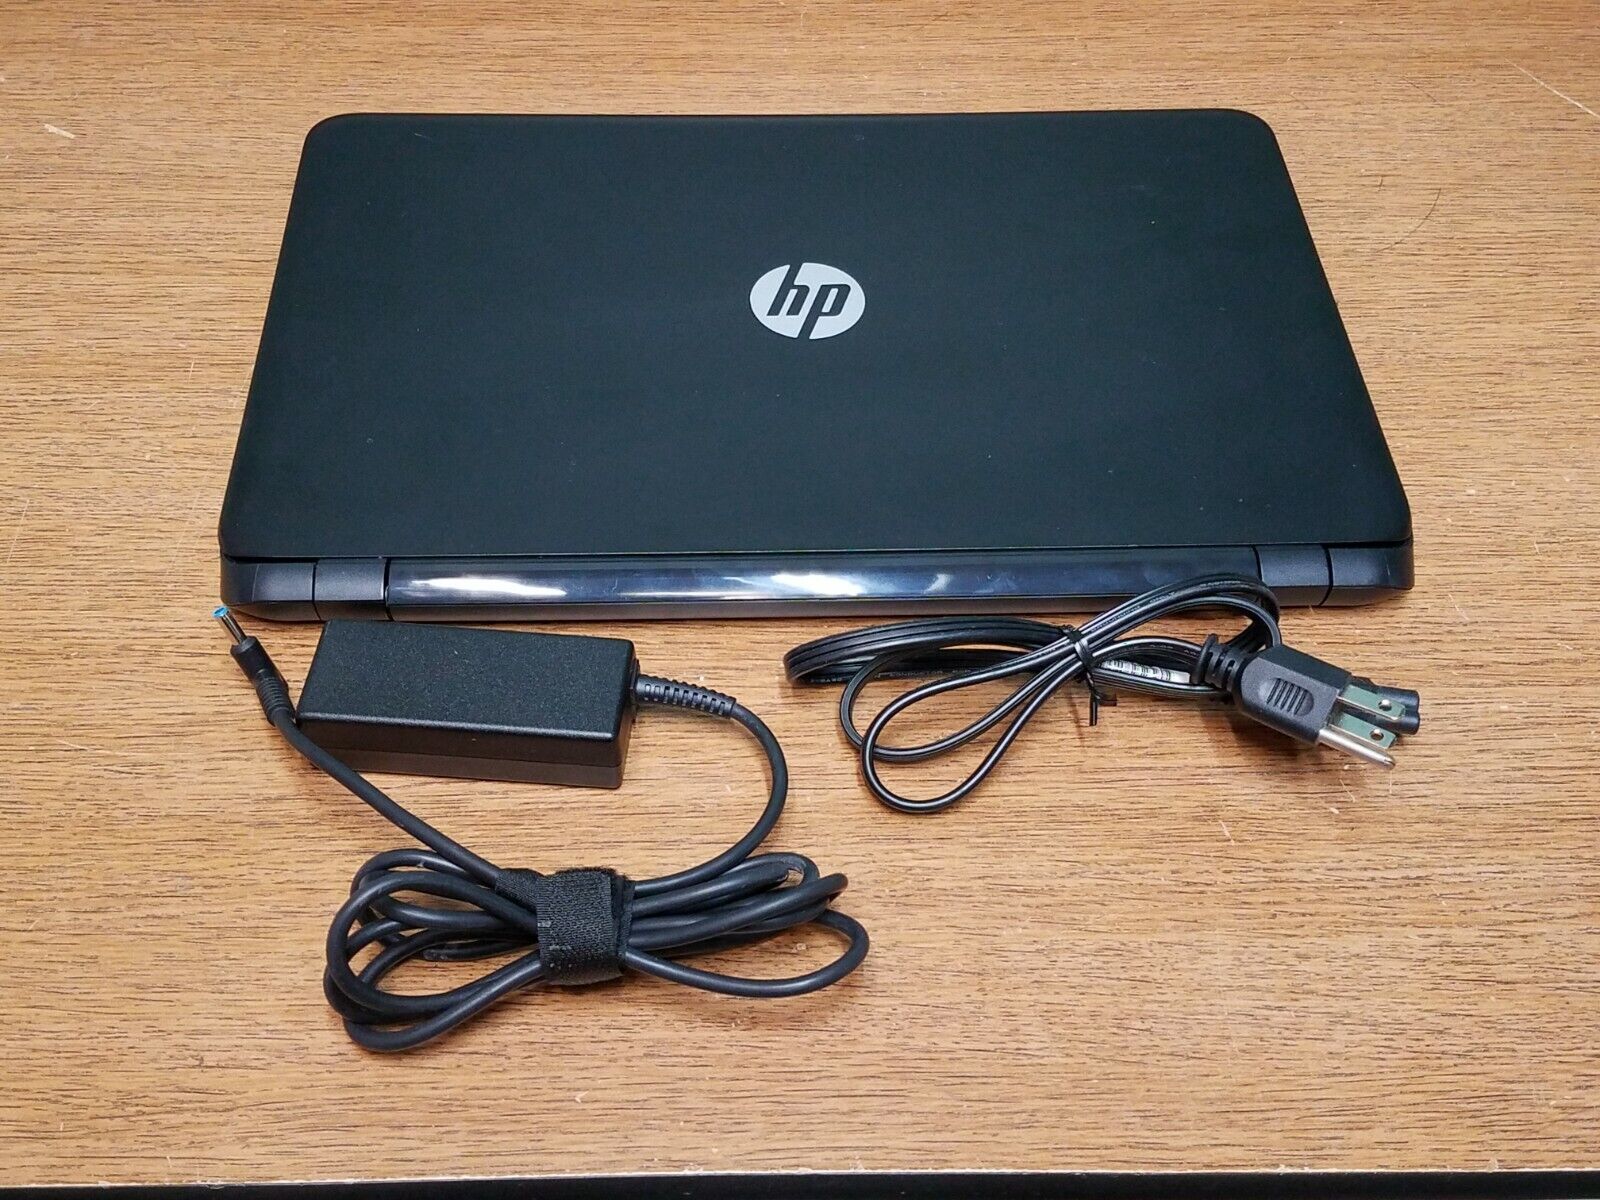 Billy Bedankt frequentie HP 15" Laptop w/ Intel Celeron N2830 2.16 GHZ + 4 GB | eBay